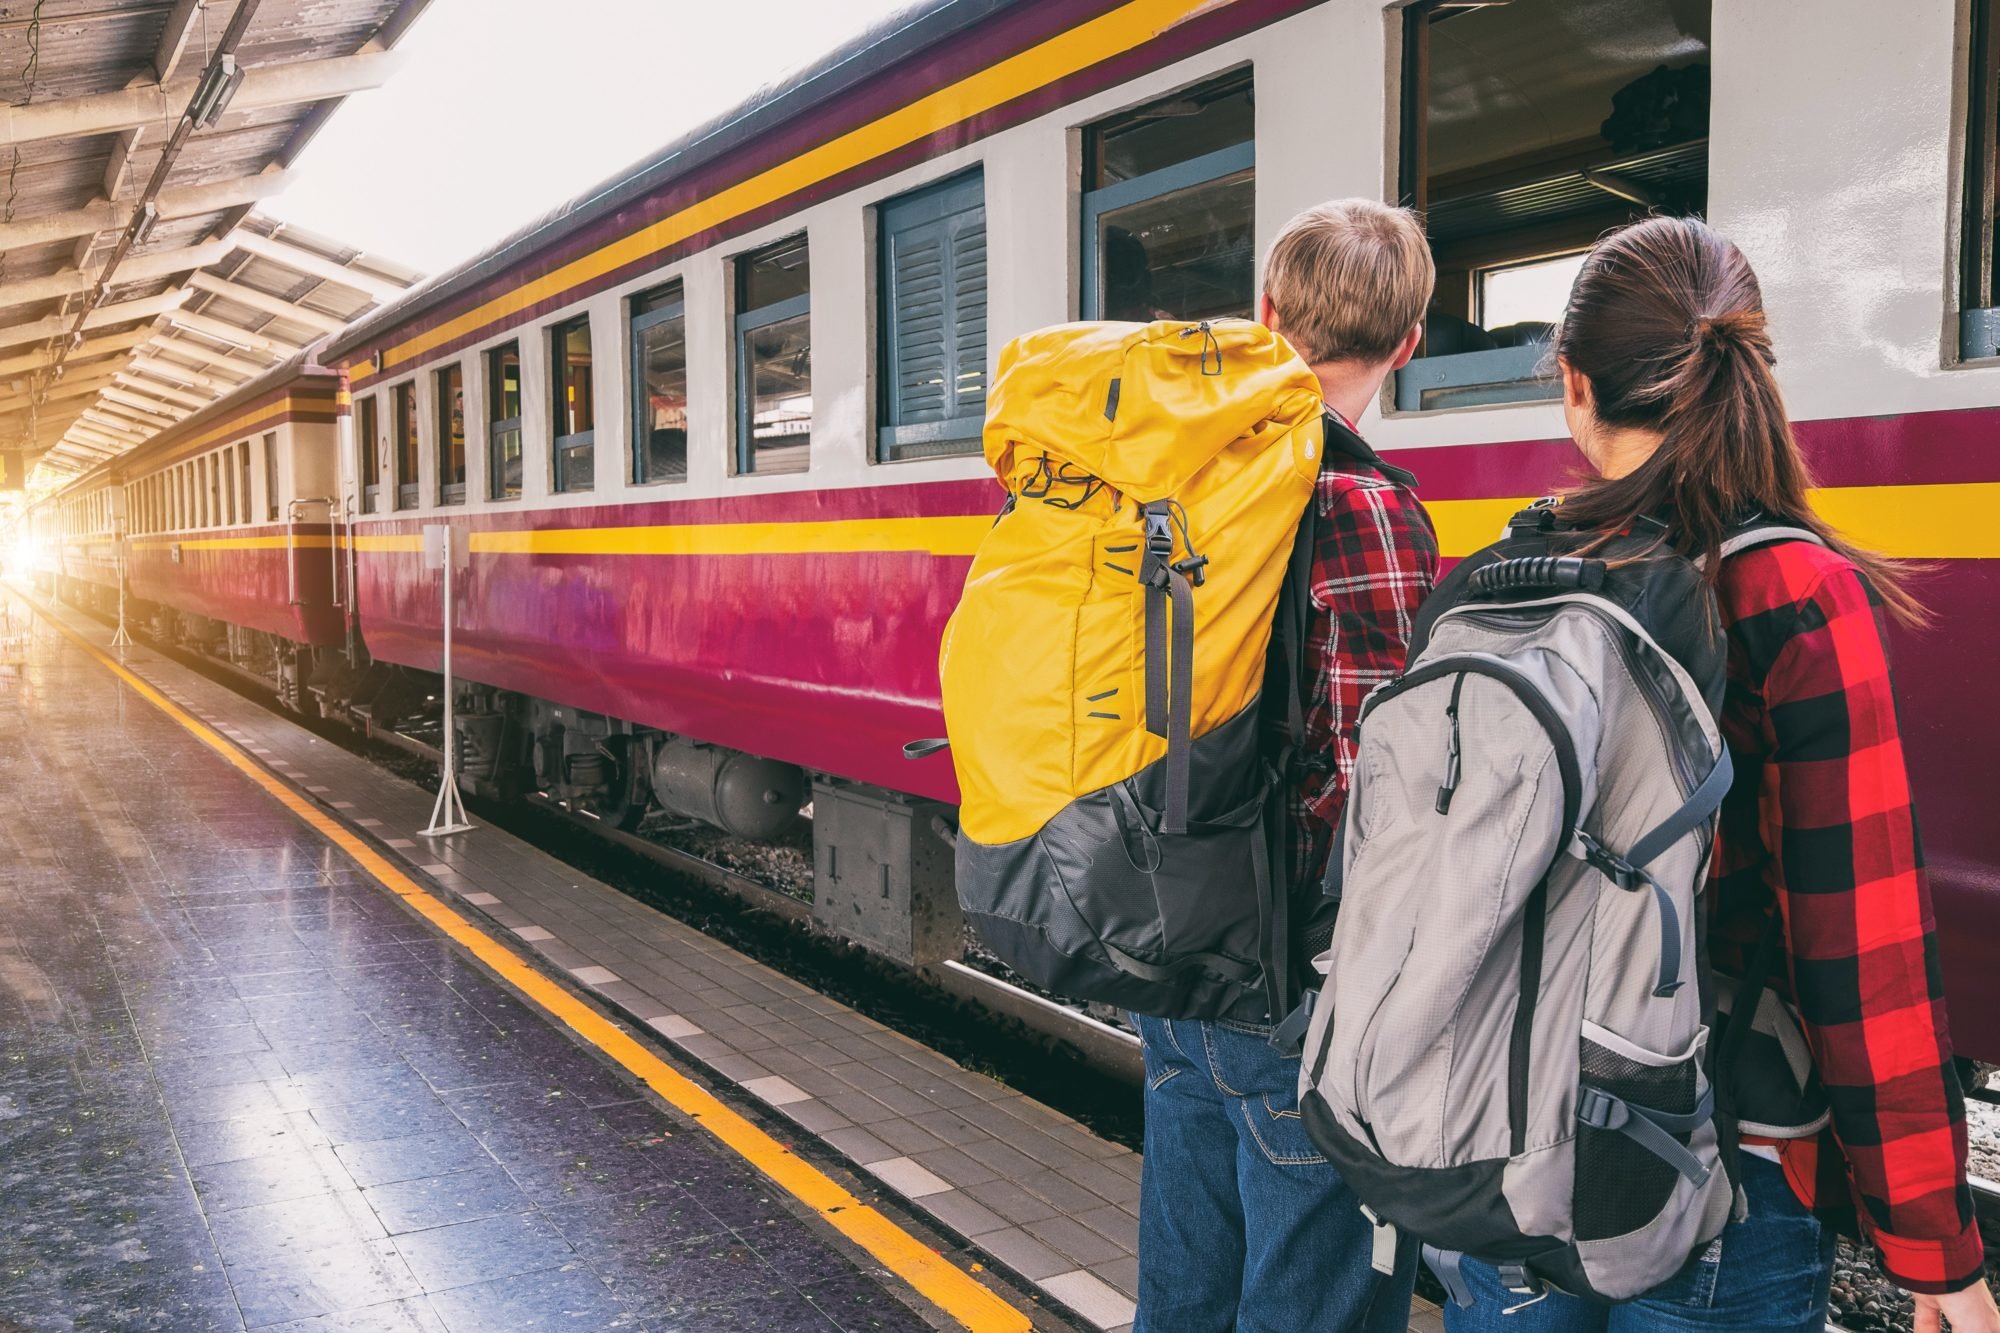  Proiect: Ce categorii de studenţi vor beneficia de reducere de preţ sau gratuitate la călătoriile cu trenul